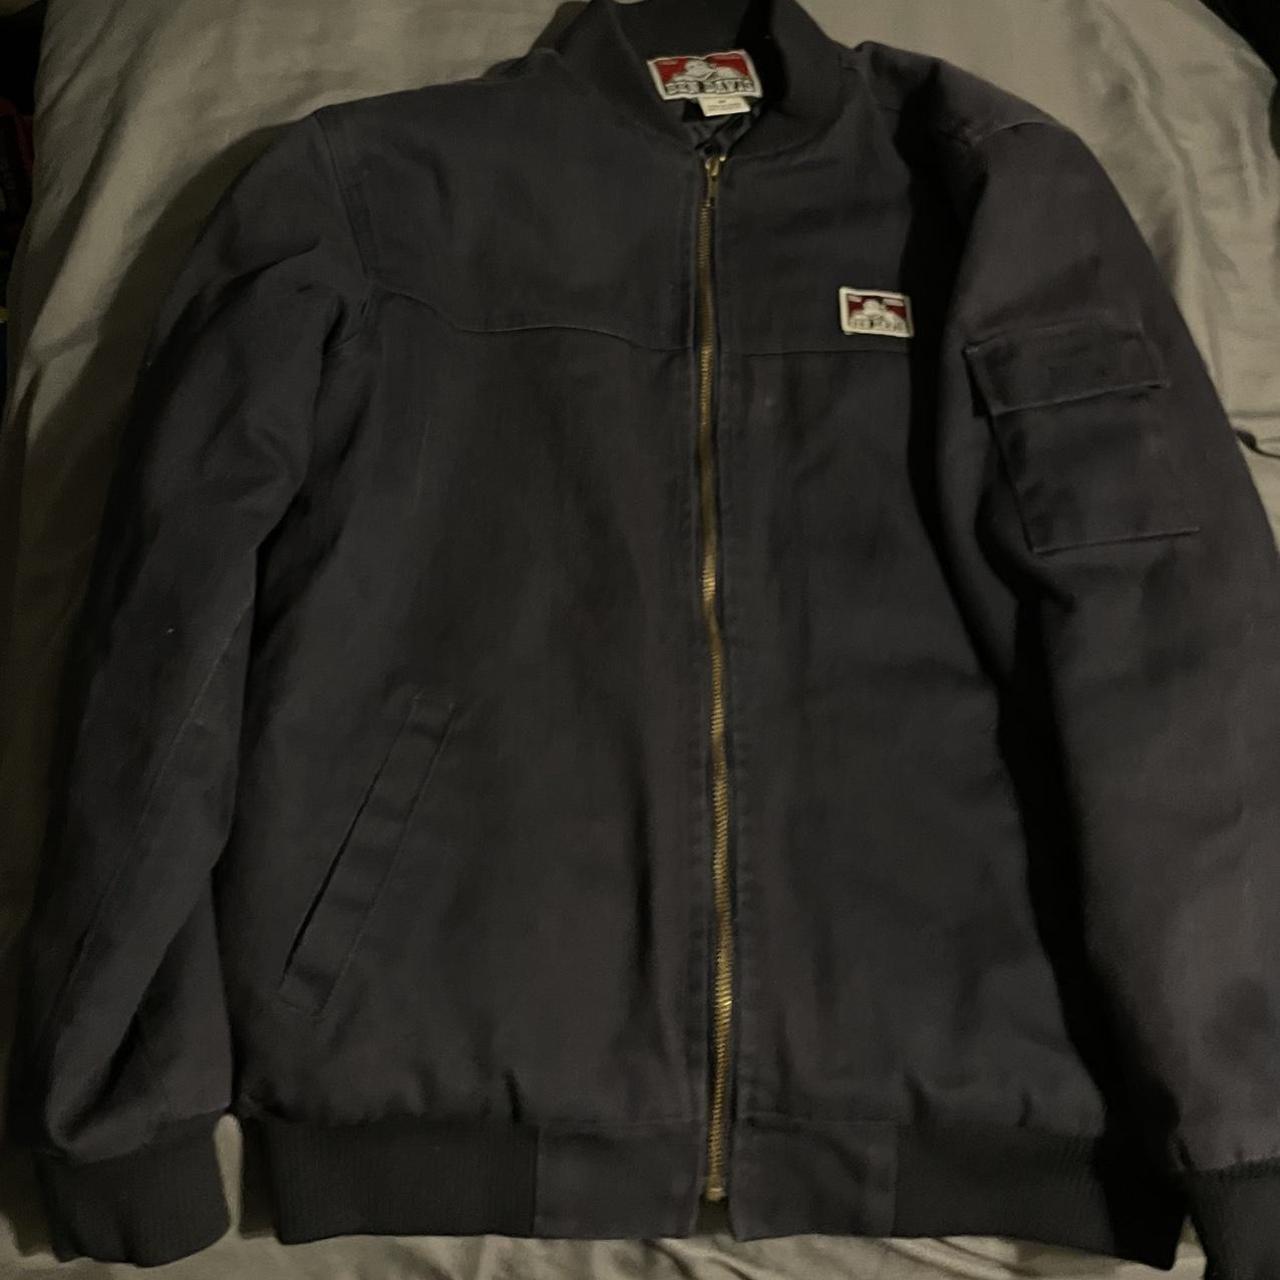 Ben davis bomber jacket Faded vintage look - Depop